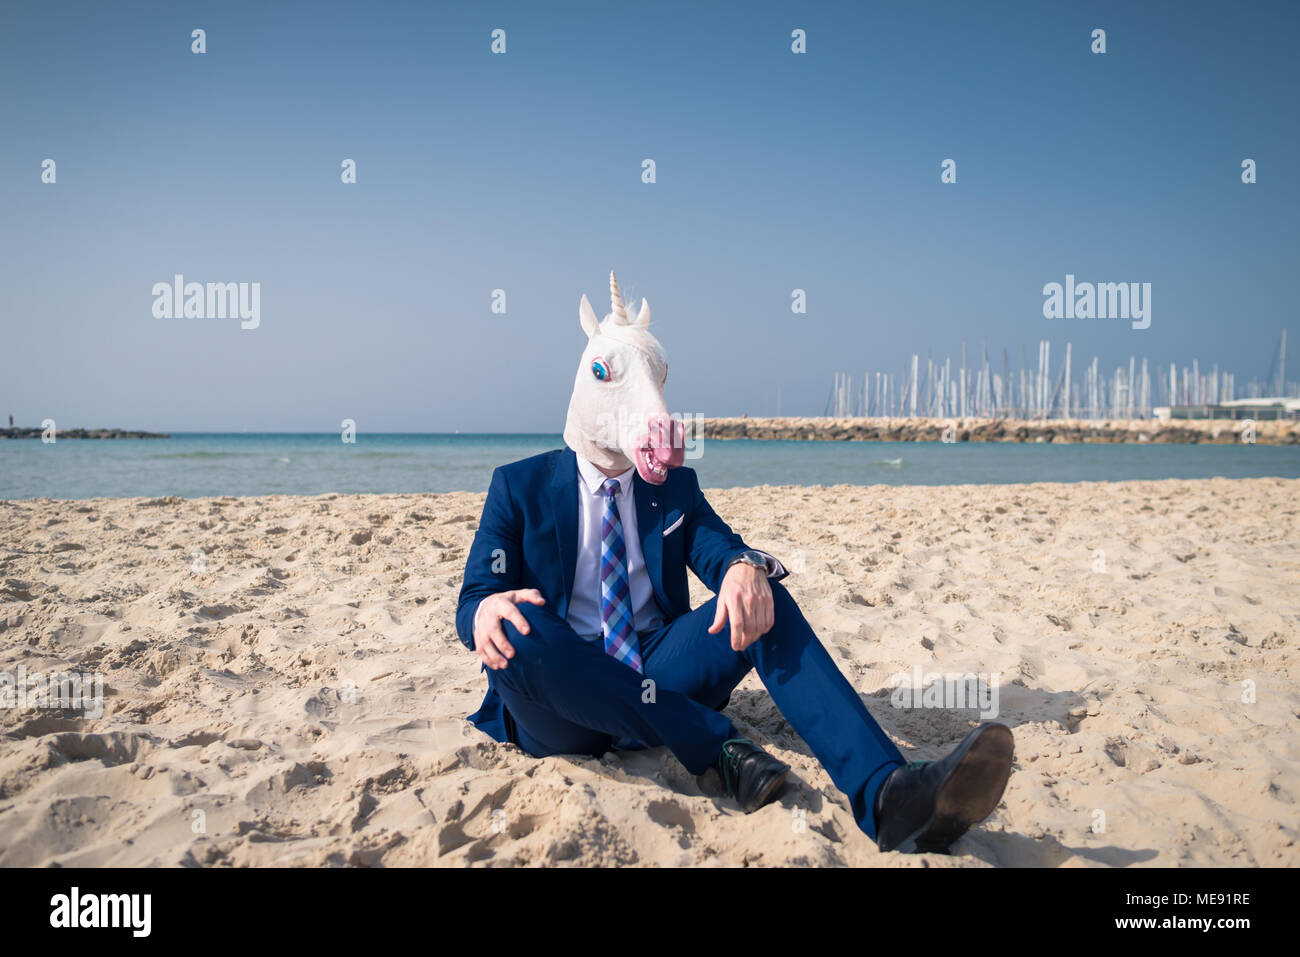 Giovane uomo in maschera divertente siede sulla sabbia e gode di vacanza. Guy inusuale in abito elegante si rilassa sulla spiaggia. Unicorn sullo sfondo del mare e del cielo Foto Stock